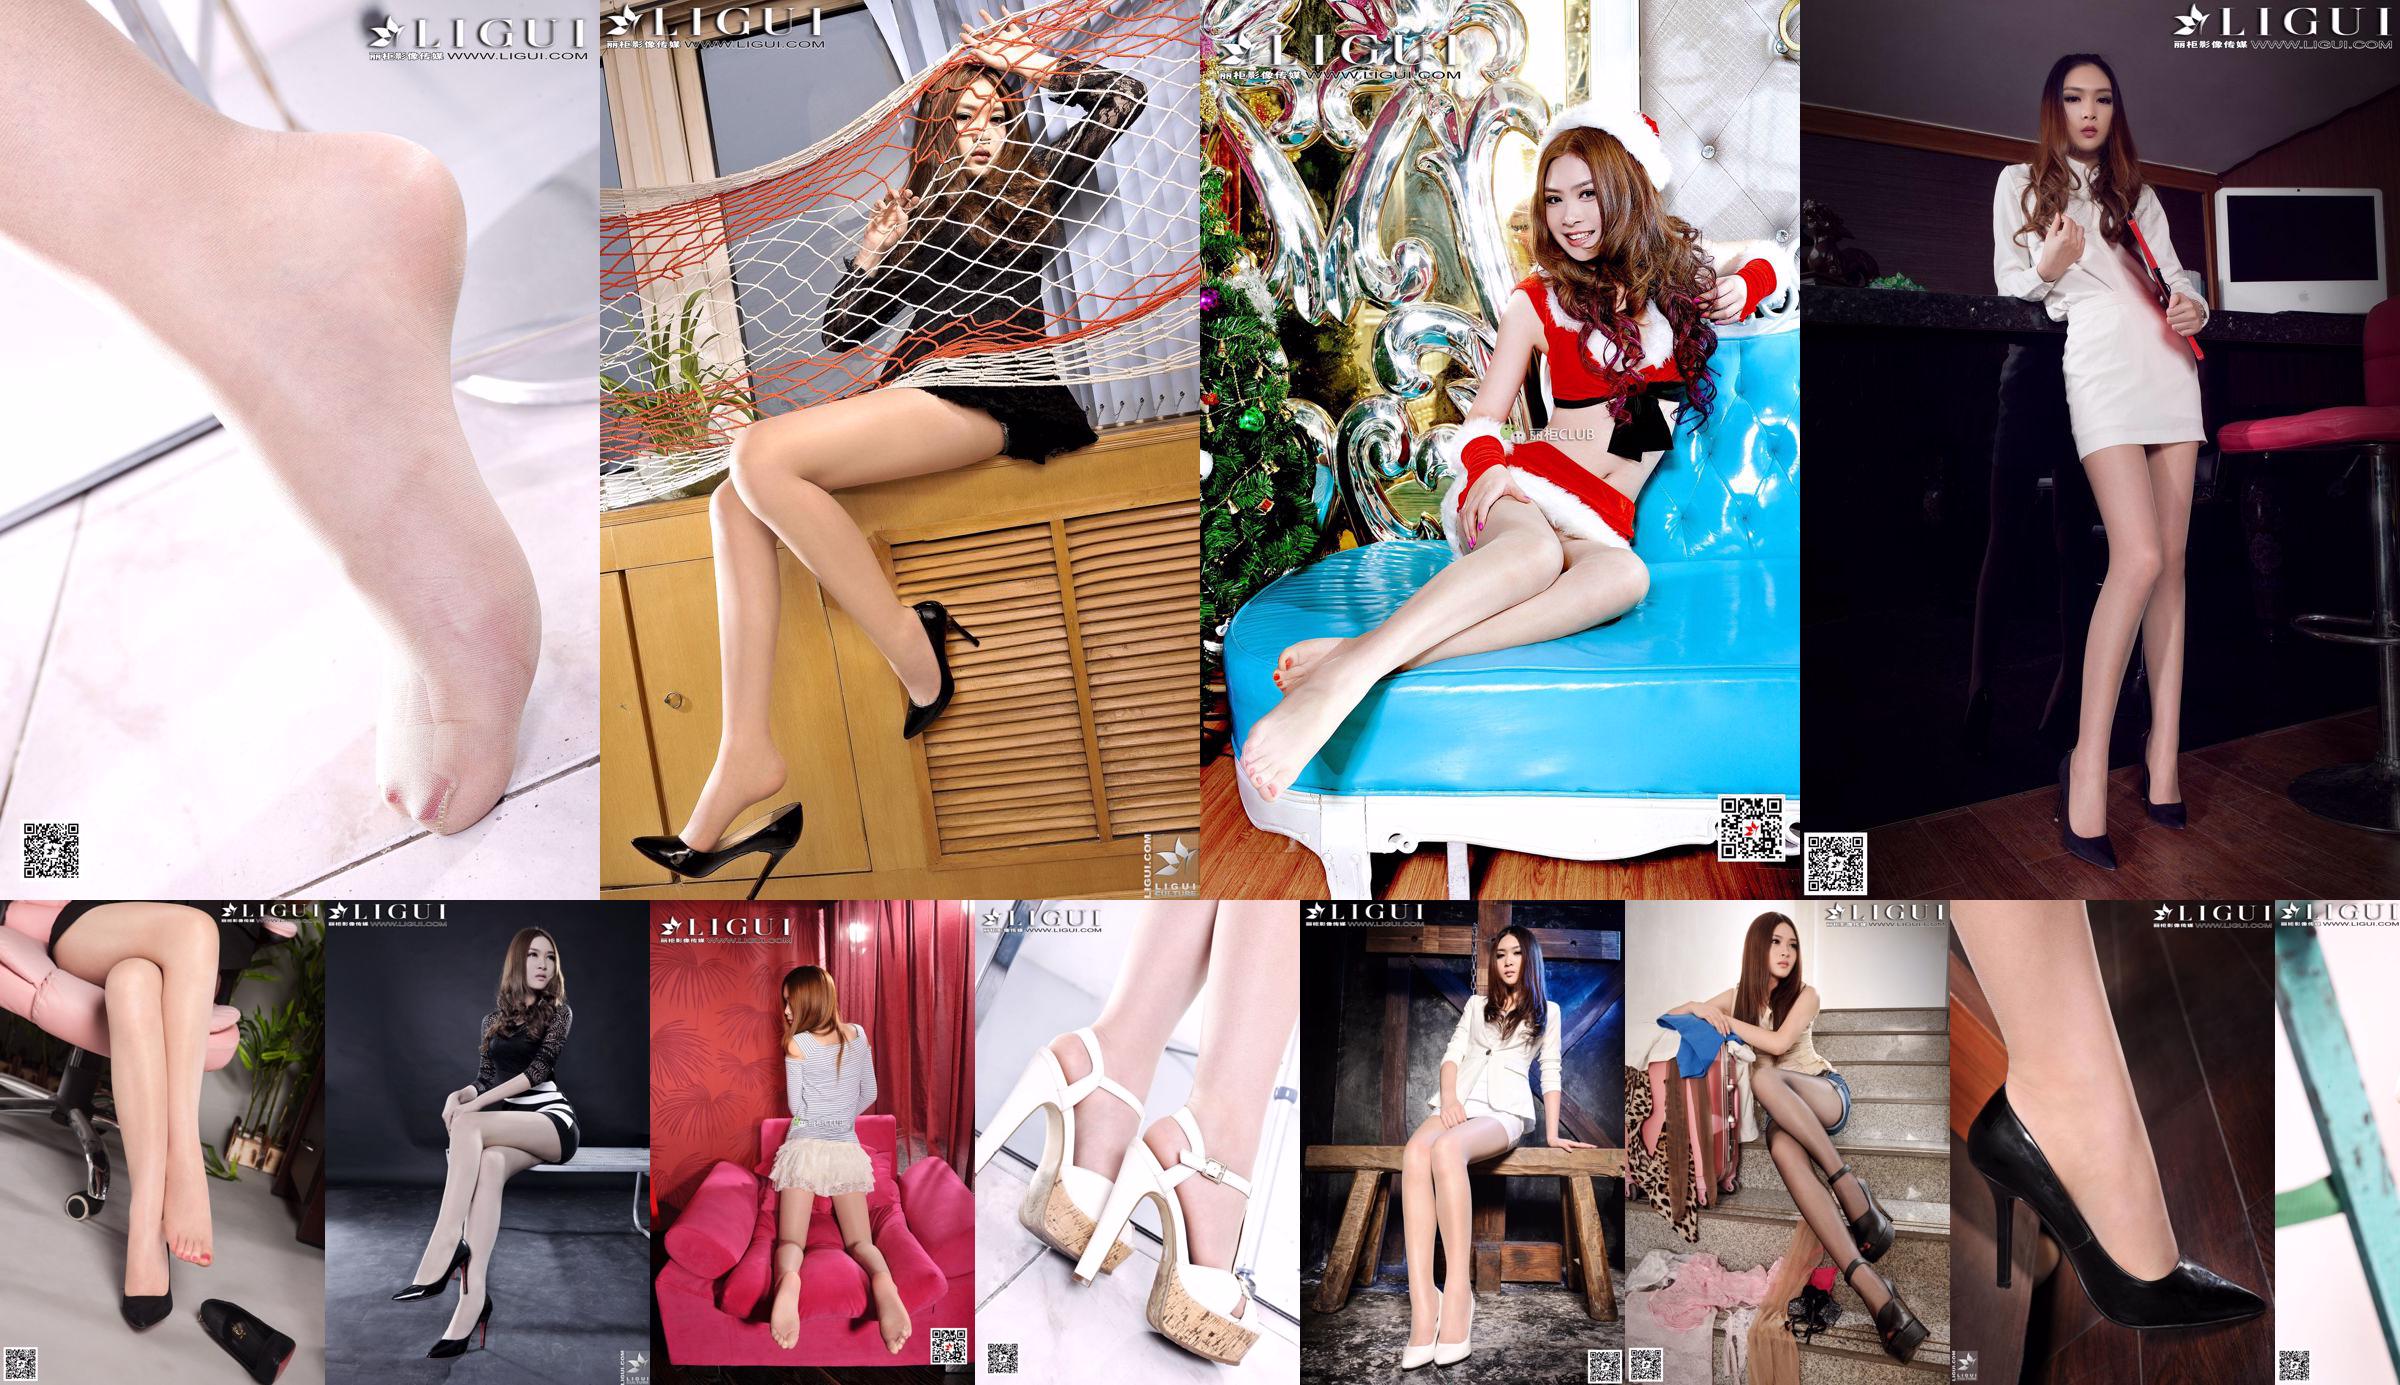 [丽 柜 LiGui] Model Yoona "Office Silky Foot" Karya Lengkap Gambar Foto Kaki Indah dan Kaki Giok No.df6e9f Halaman 1